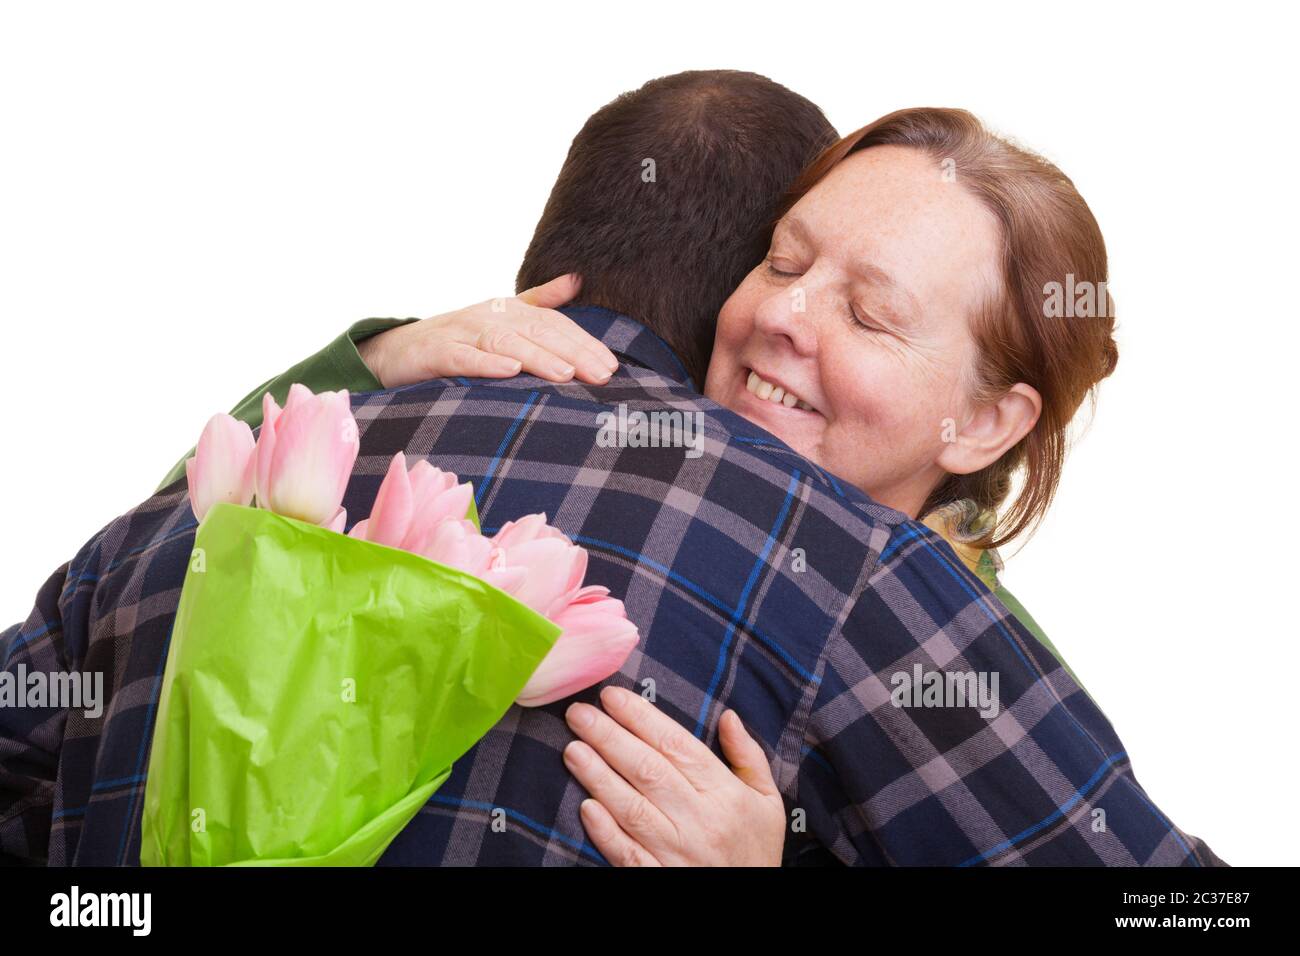 Uomo con bouquet di tulipani rosa nascosto dietro la schiena abbracciando la donna anziana, isolato su sfondo bianco. Giornata delle madri, Valenti Foto Stock